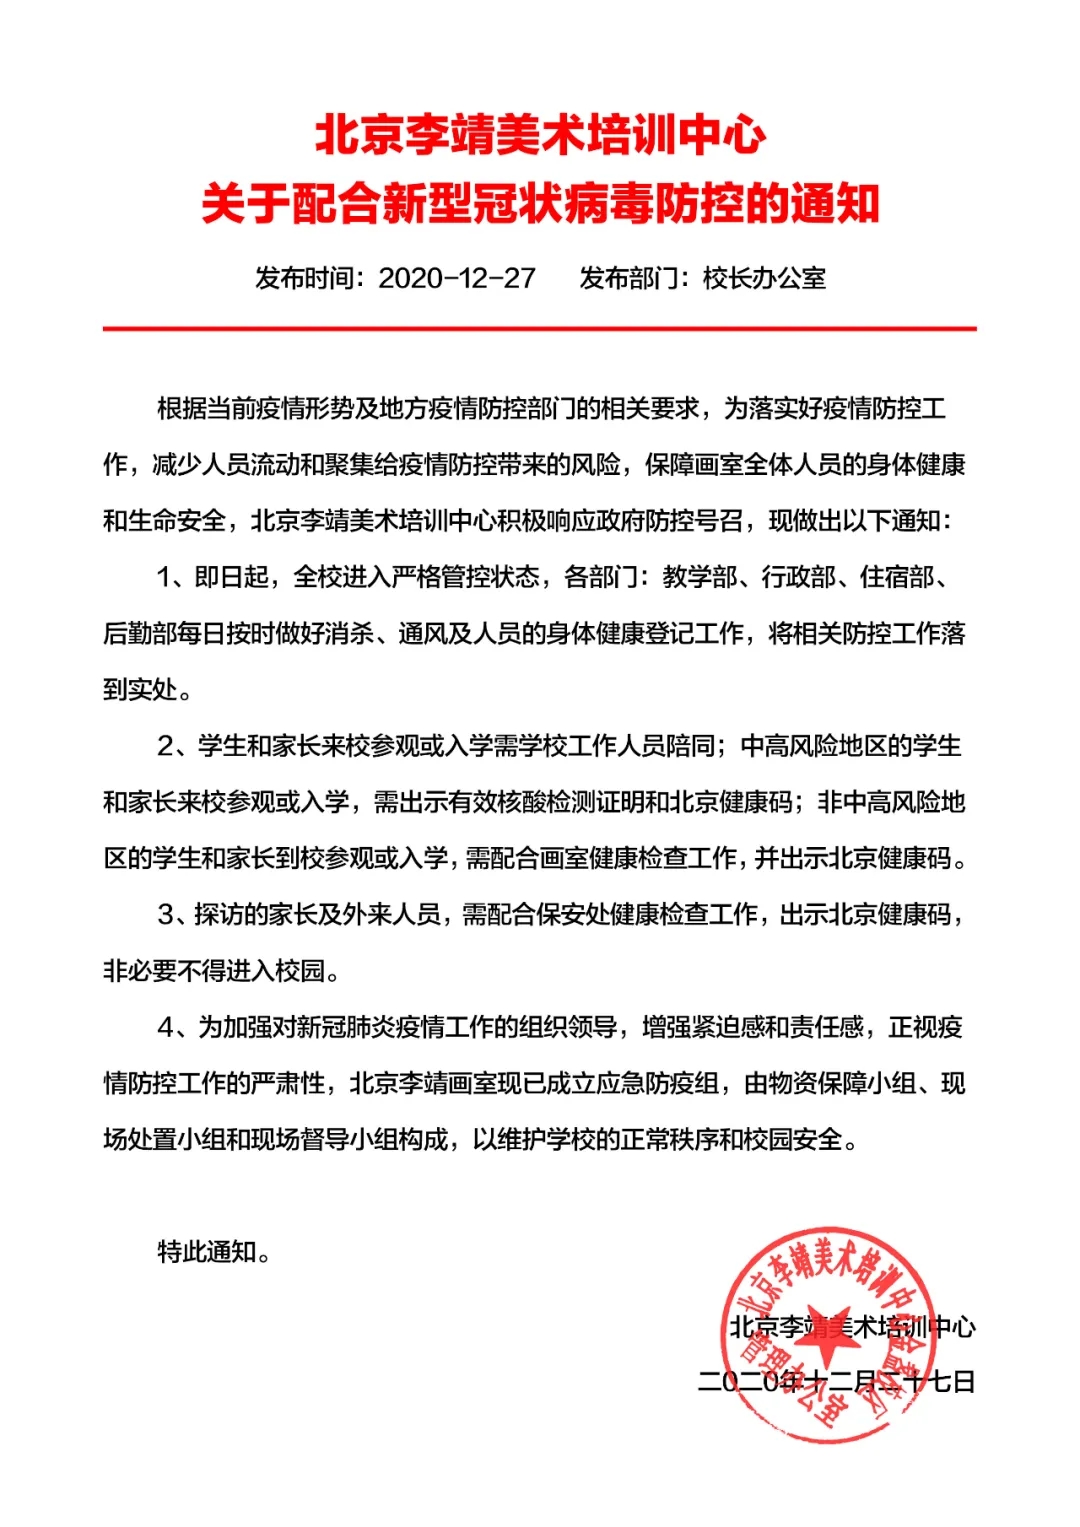 北京李靖画室关于配合新型冠状病毒防控的通知